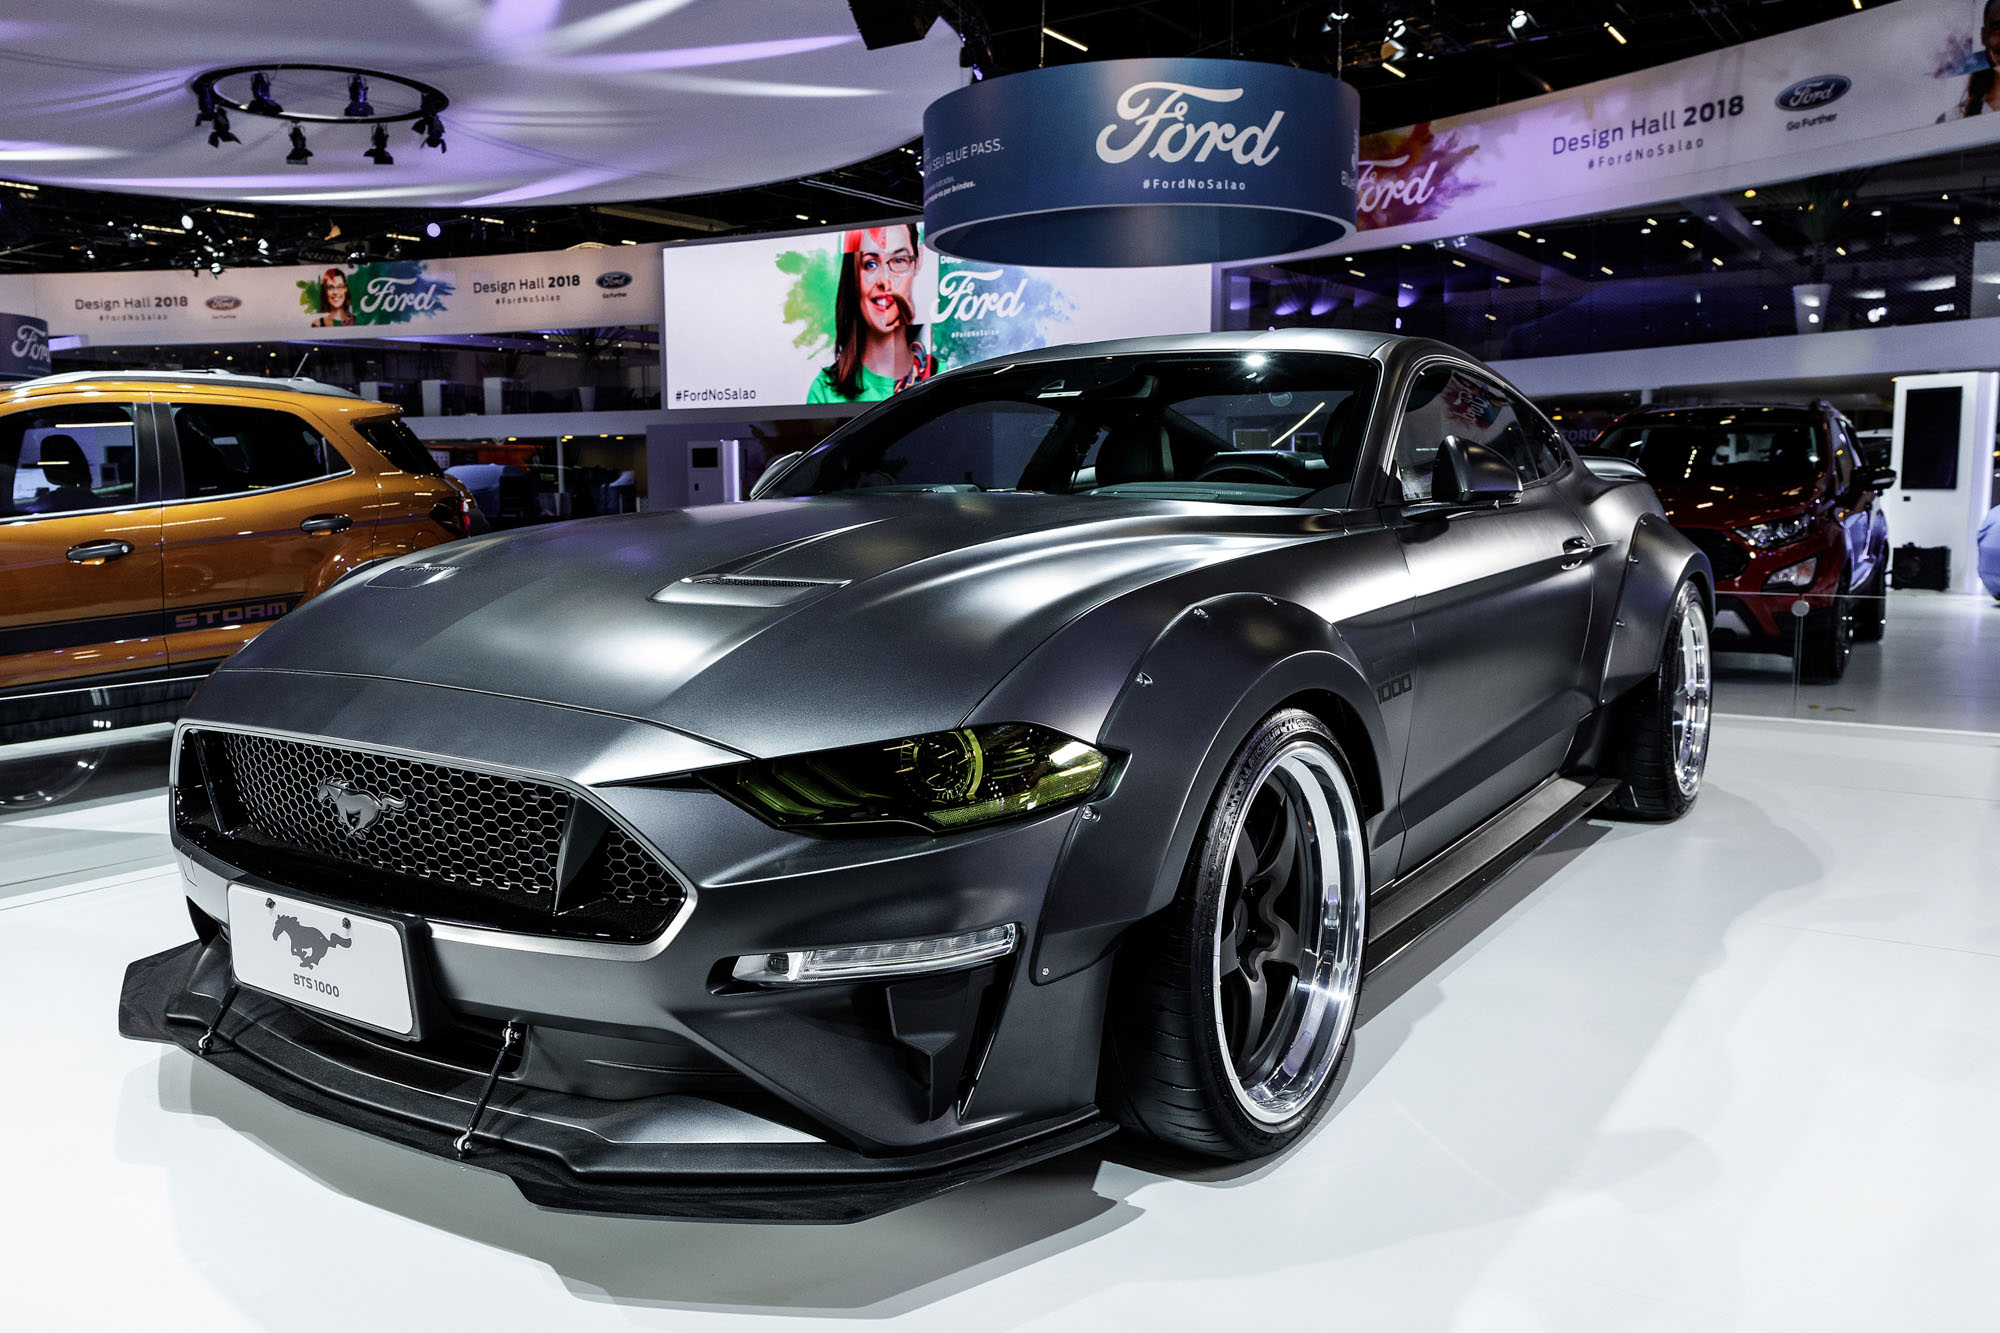 Ford apresenta o Edge ST, o Ecosport sem estepe e o Territory no salão do automóvel 2018